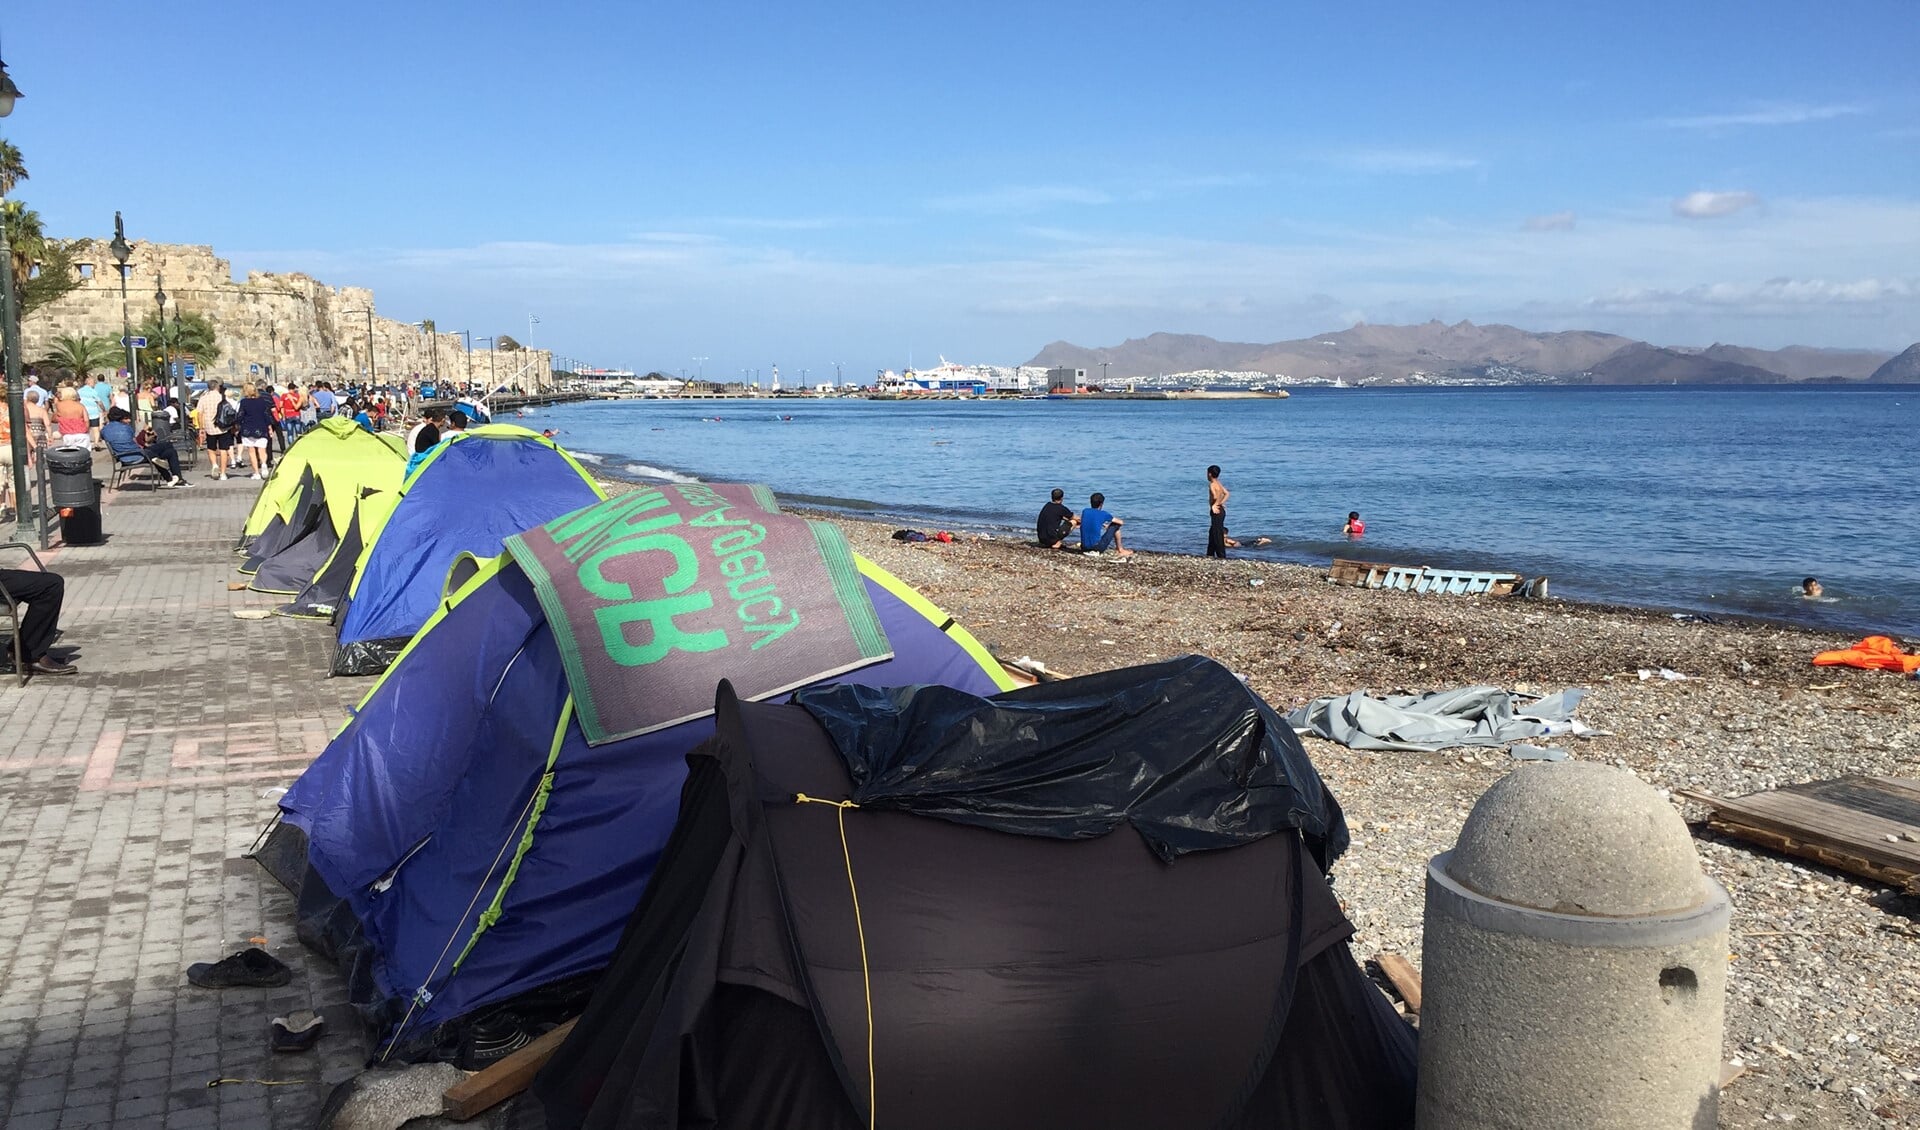 Dagelijks komen er vluchtelingen aan in Europa, zoals hier op het Griekse eiland Kos. Foto: Martijn Mastenbroek